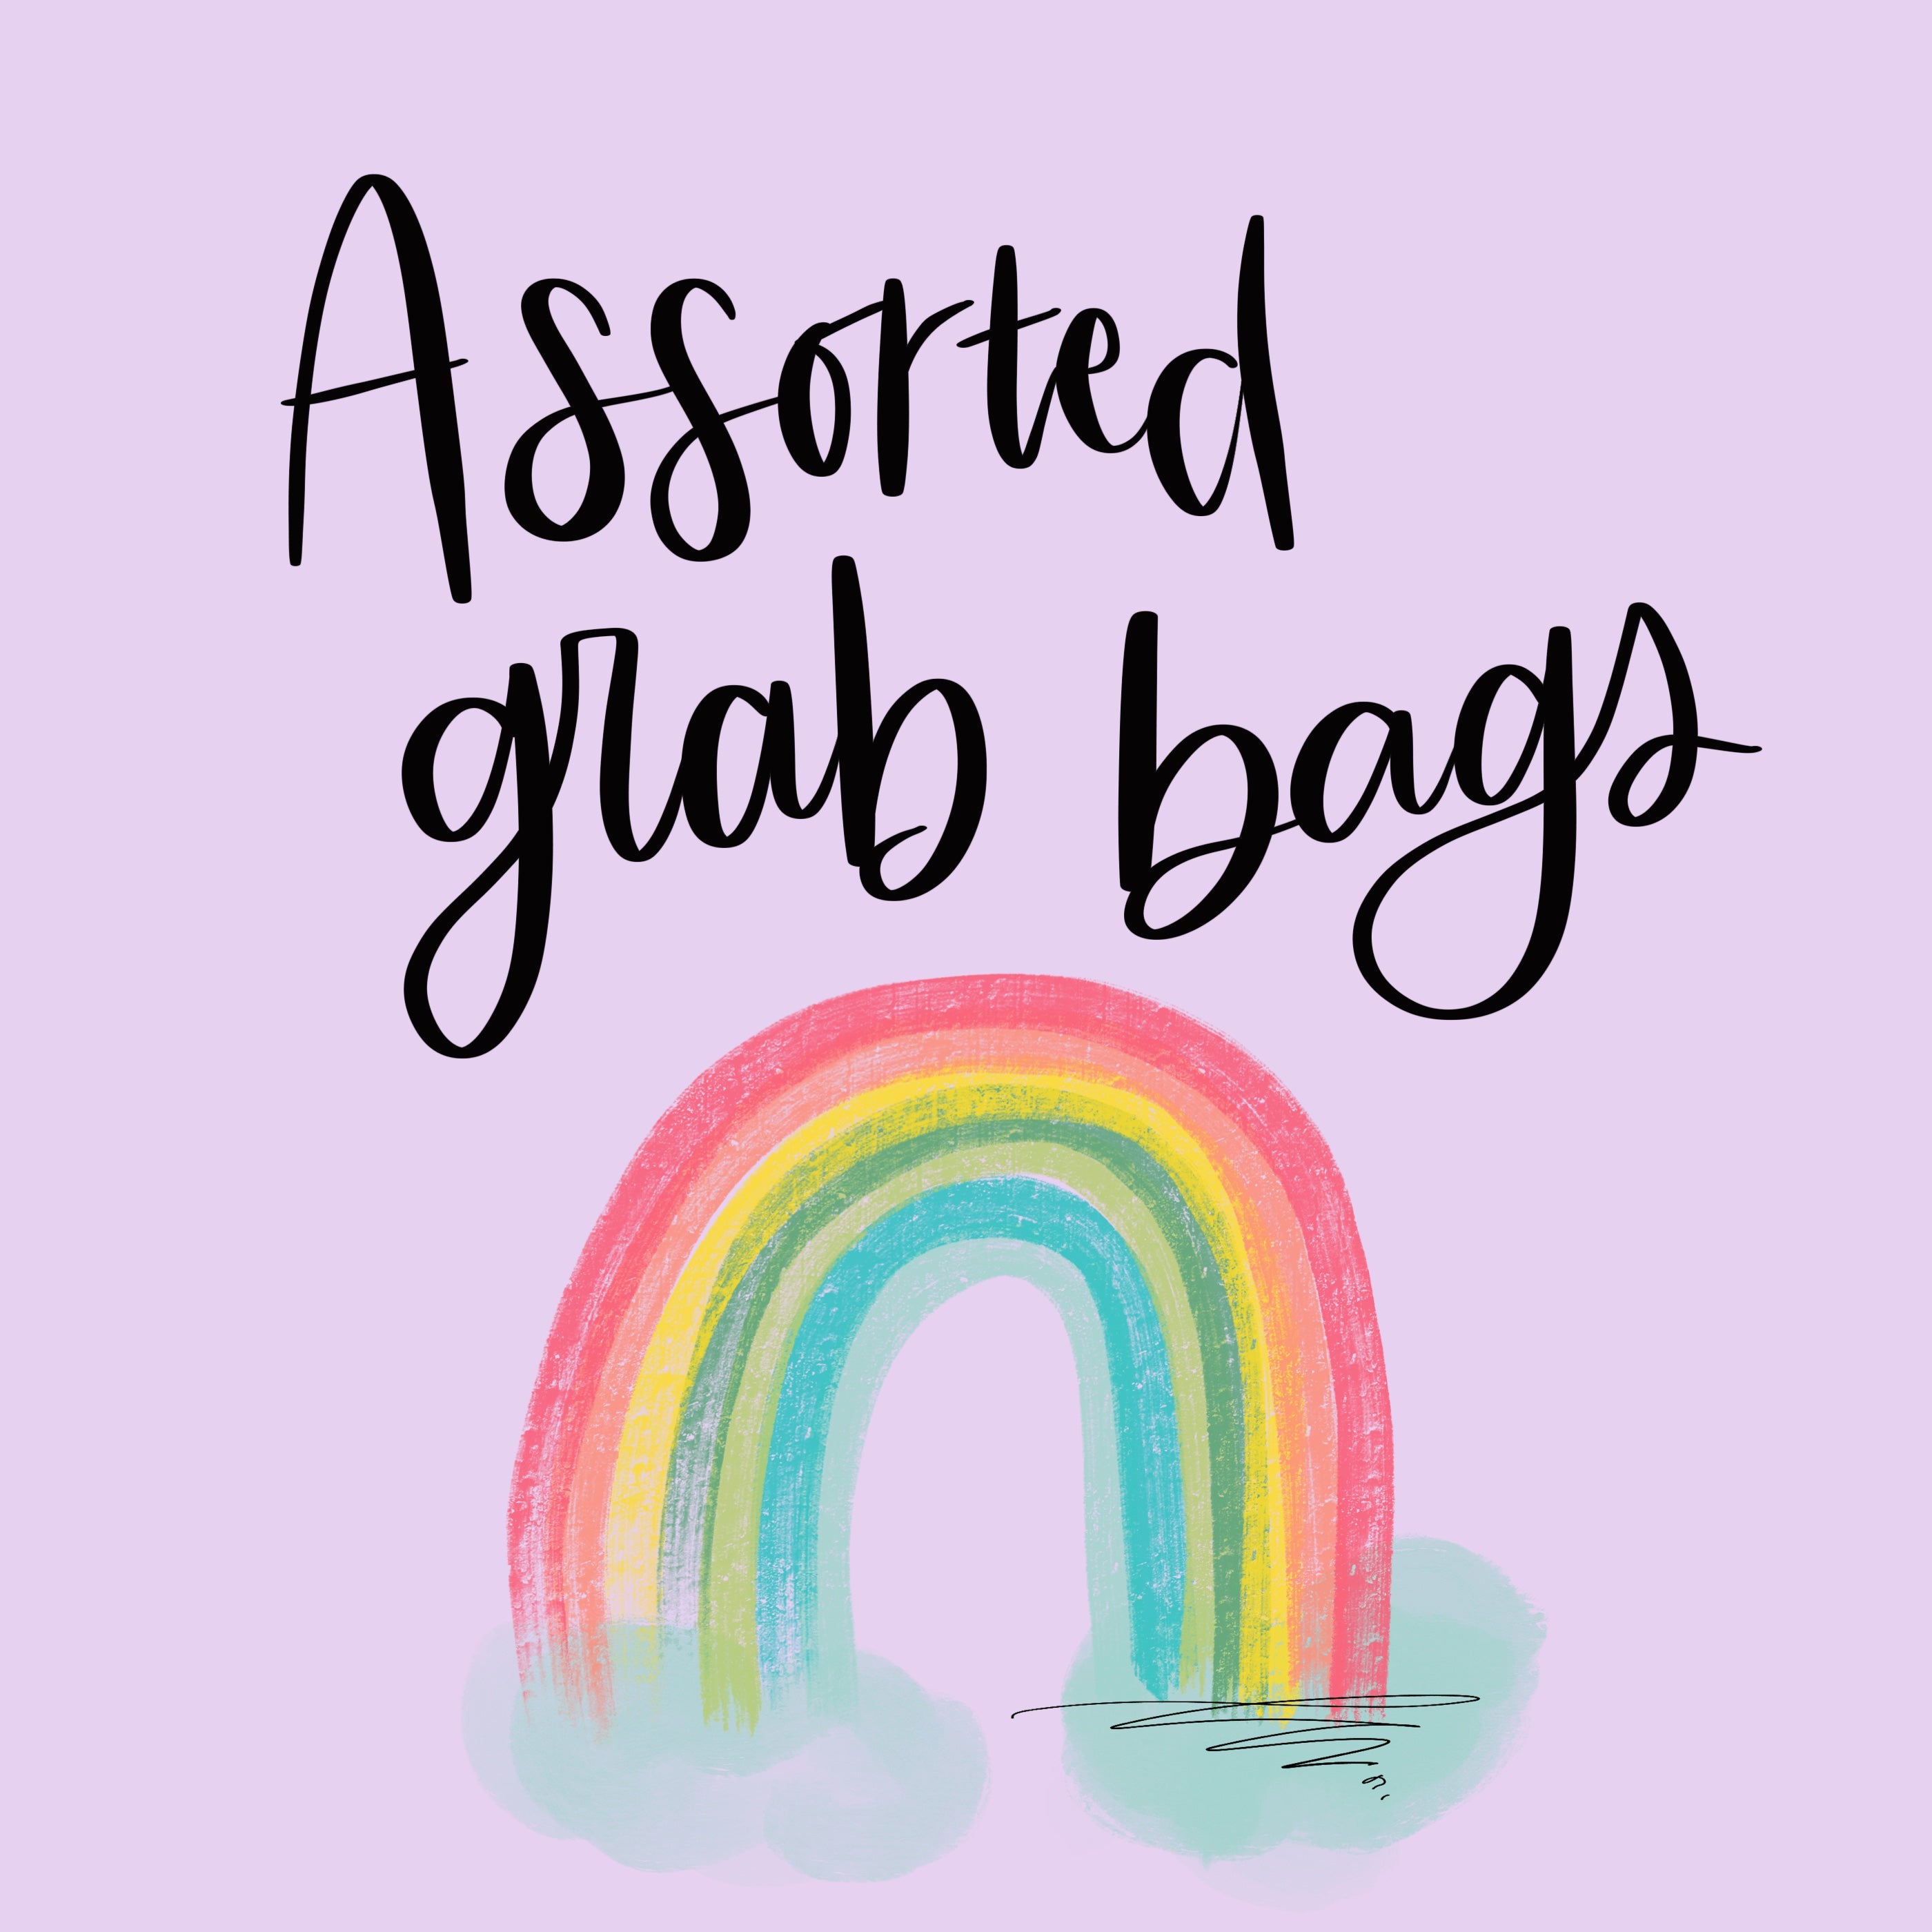 Assorted grab bag -